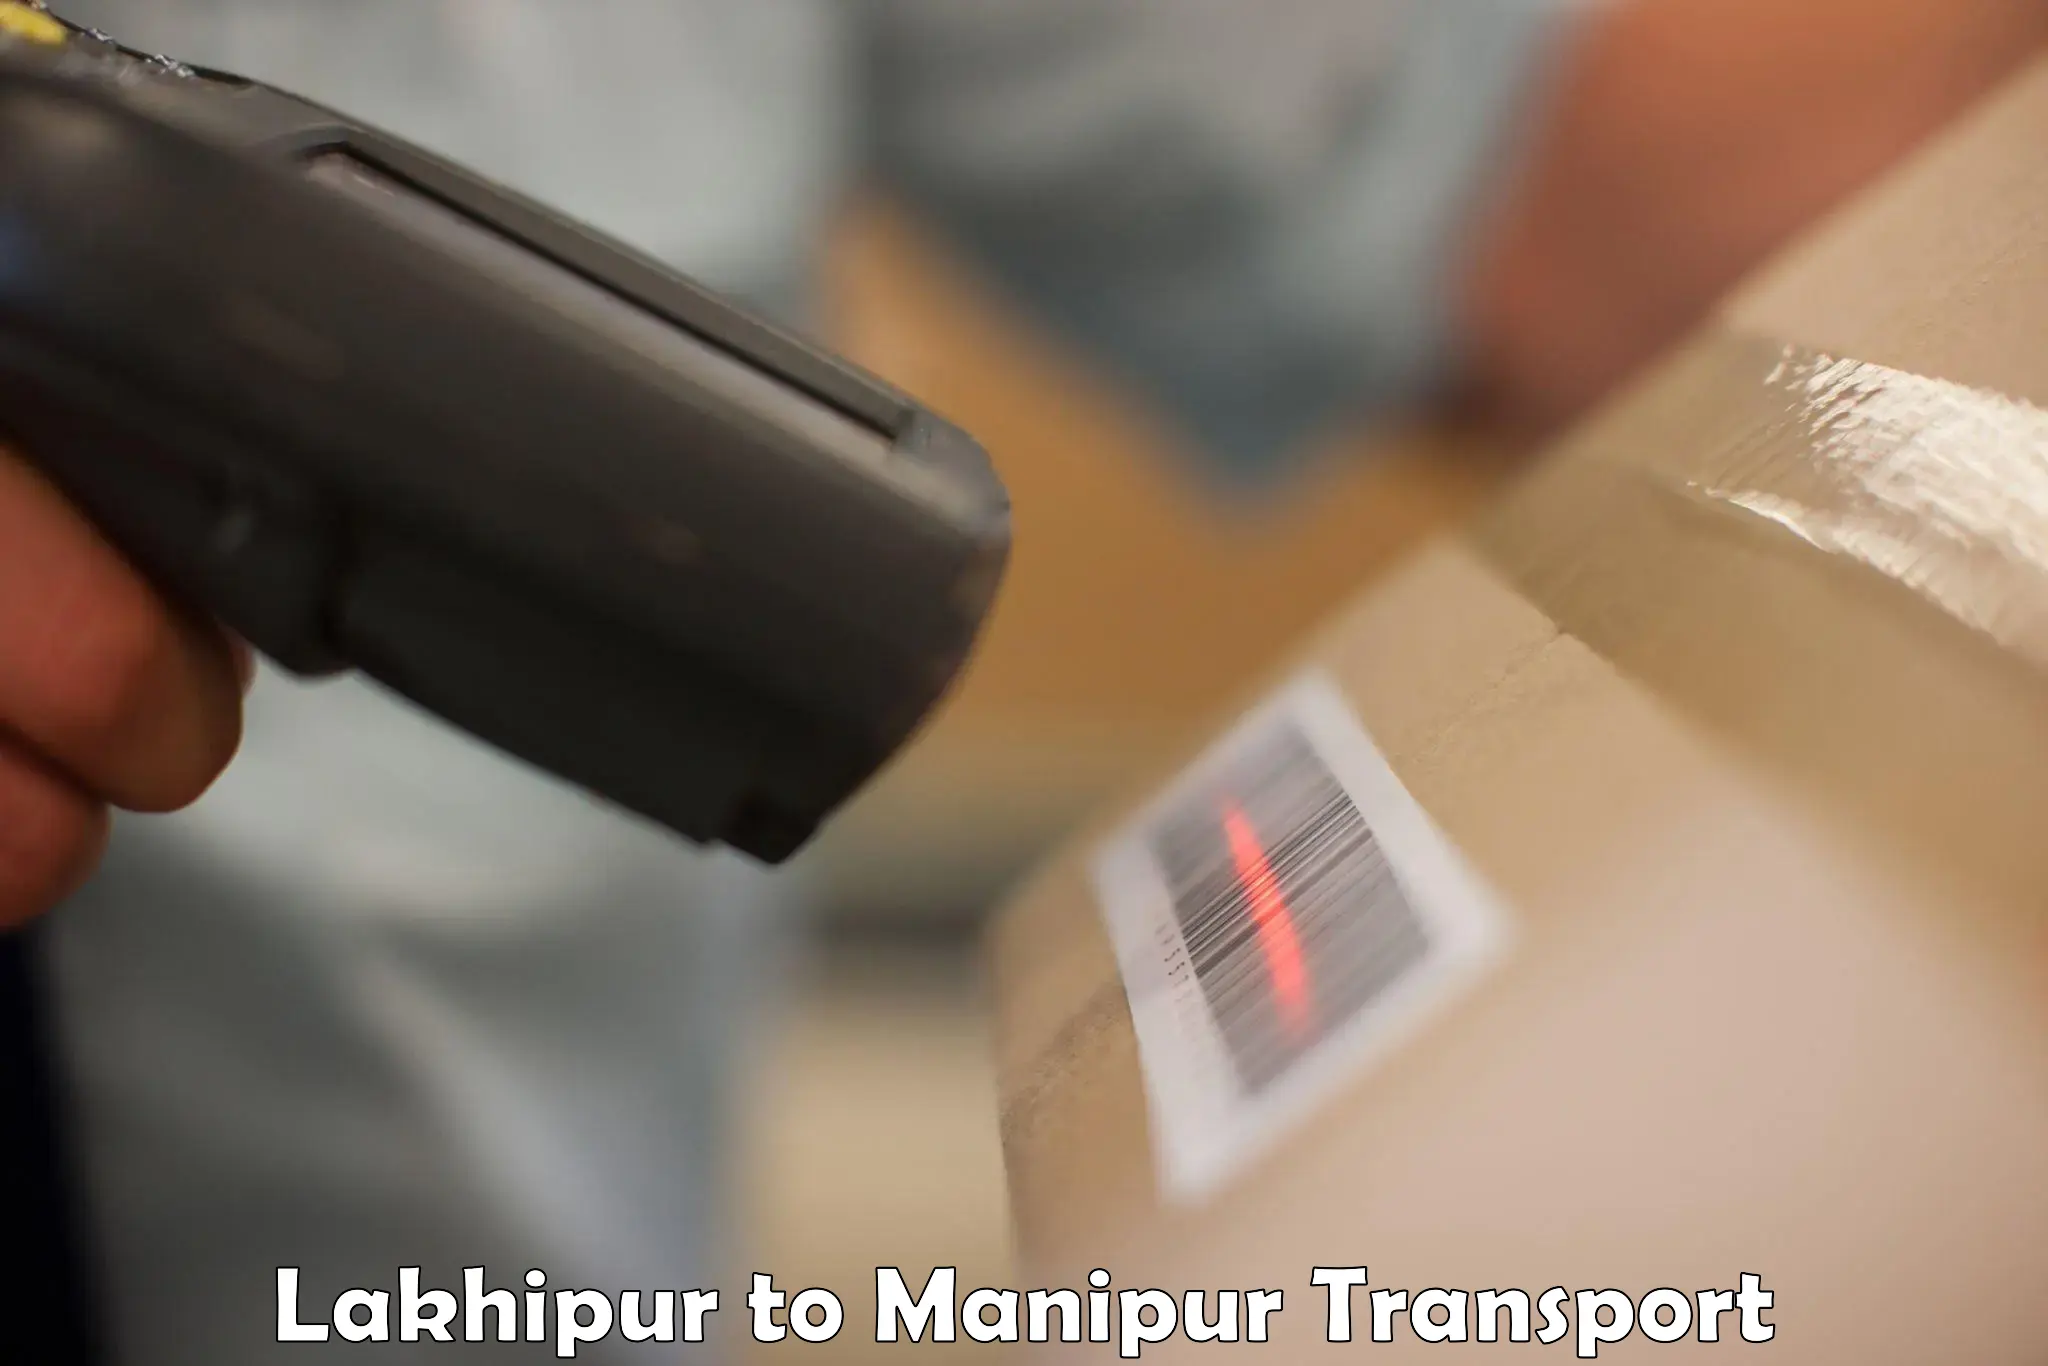 Furniture transport service Lakhipur to Moirang